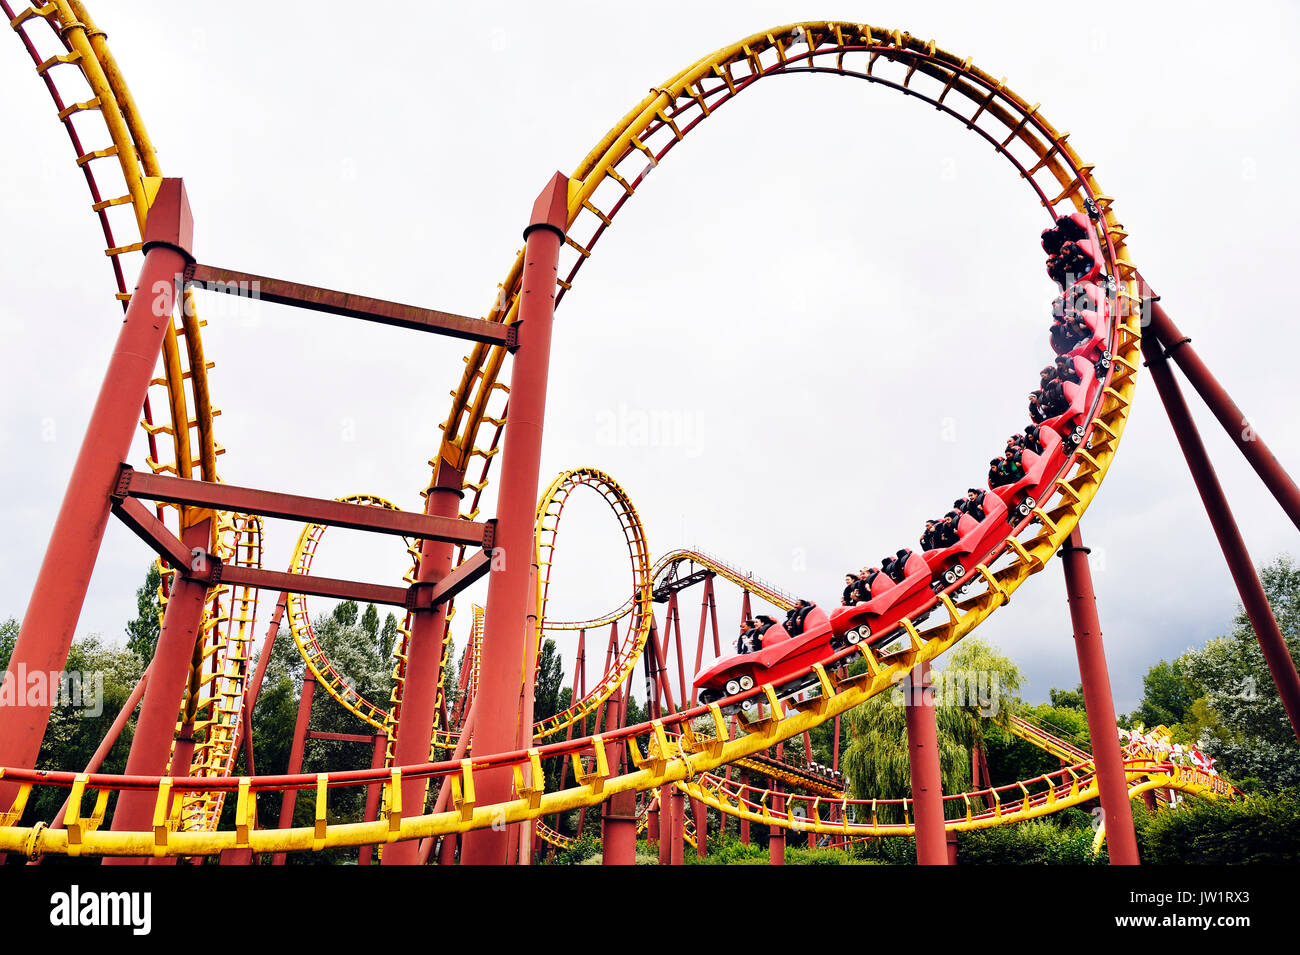 Parc Asterix, amusement park, France Stock Photo - Alamy